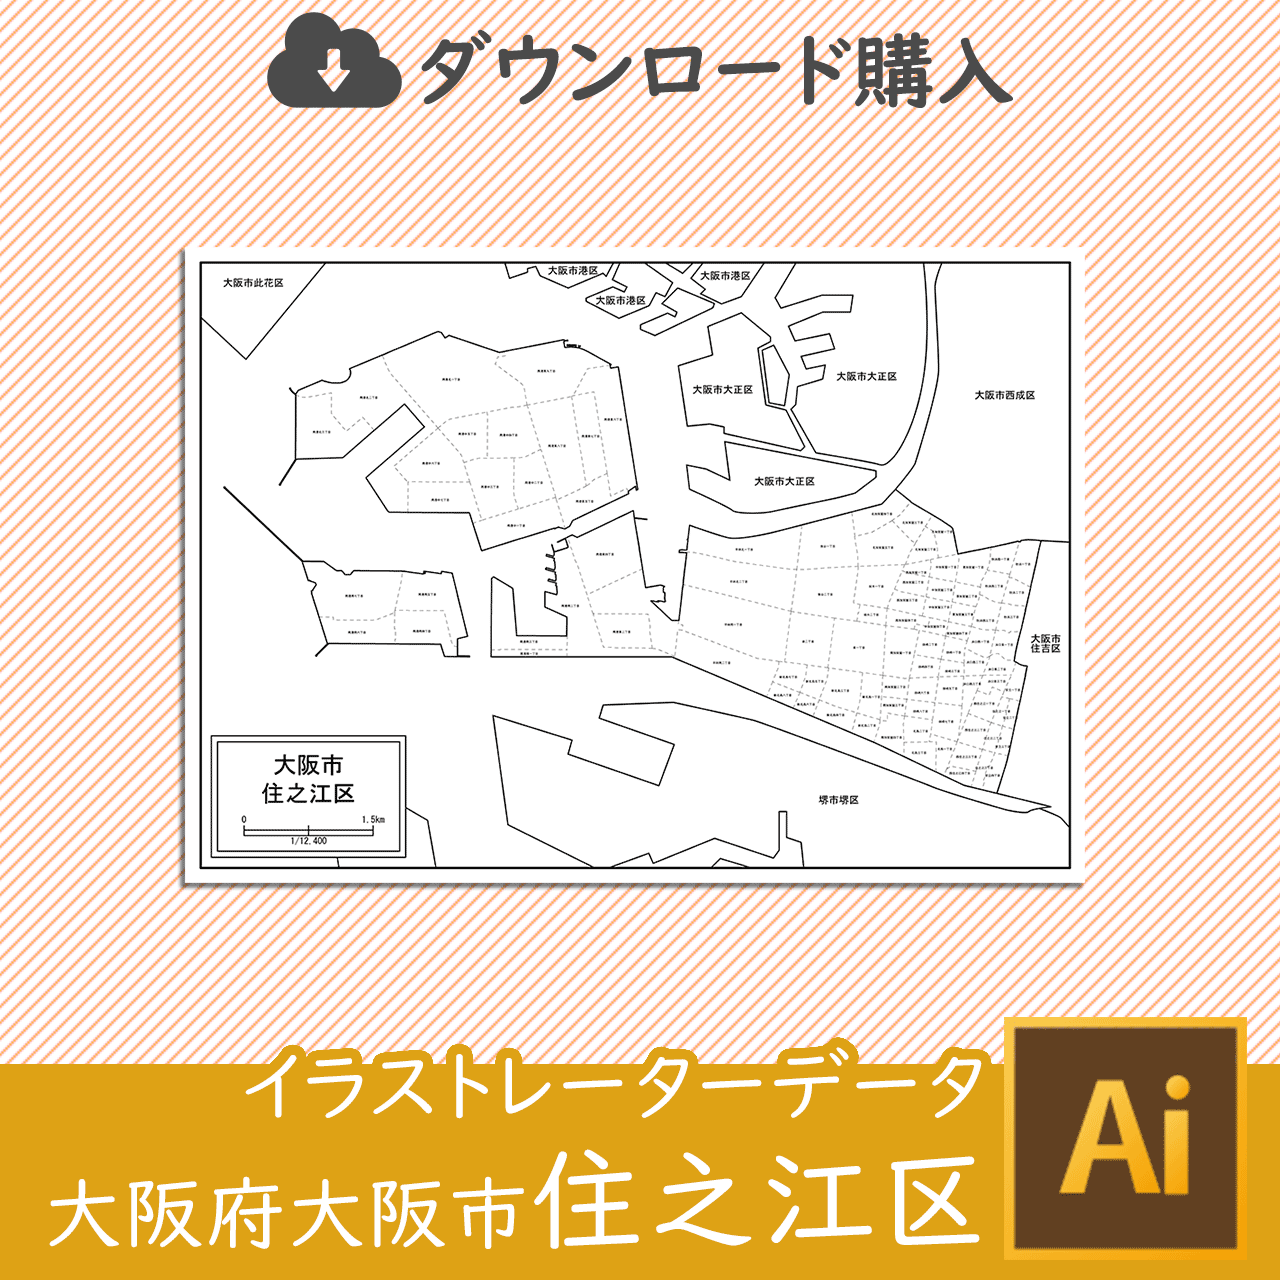 大阪市住之江区のaiデータのサムネイル画像